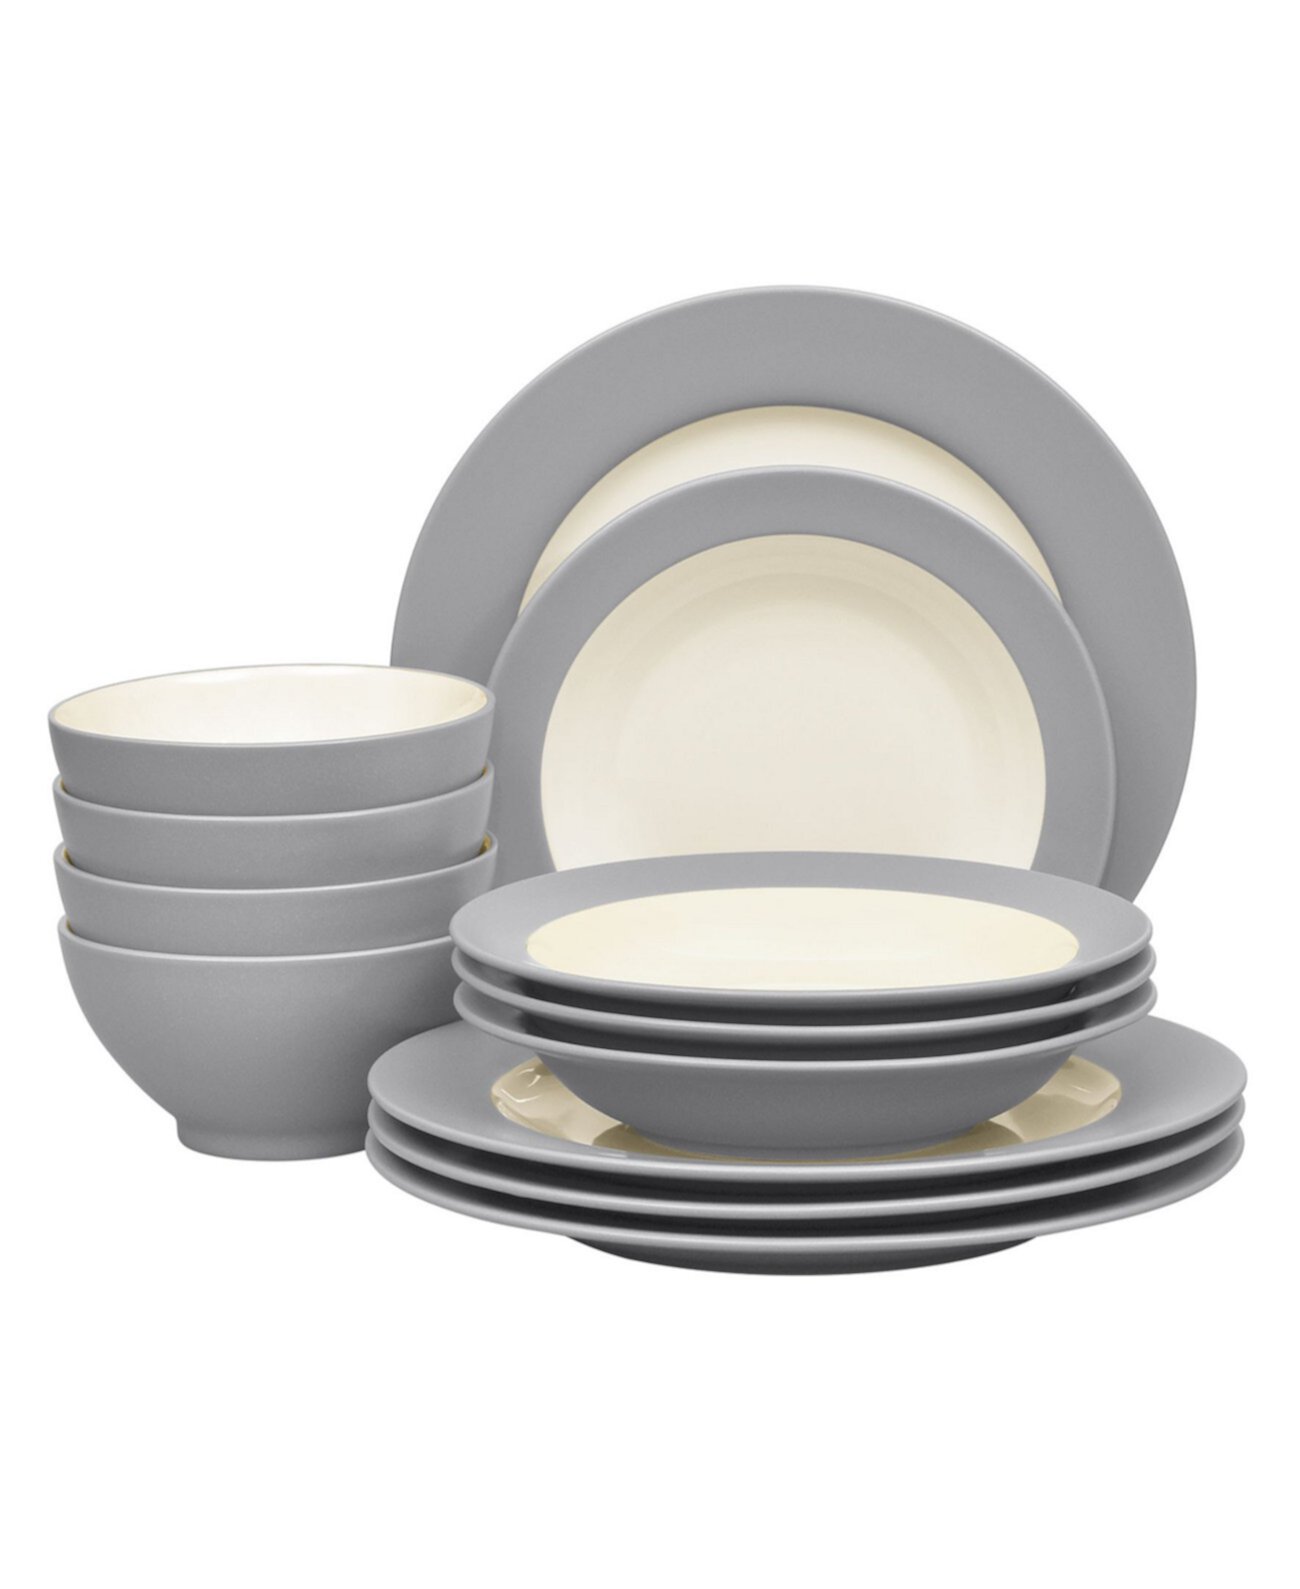 Набор столовой посуды Colorwave Rim из 12 предметов, сервиз для 4 человек, создан для Macy's Noritake